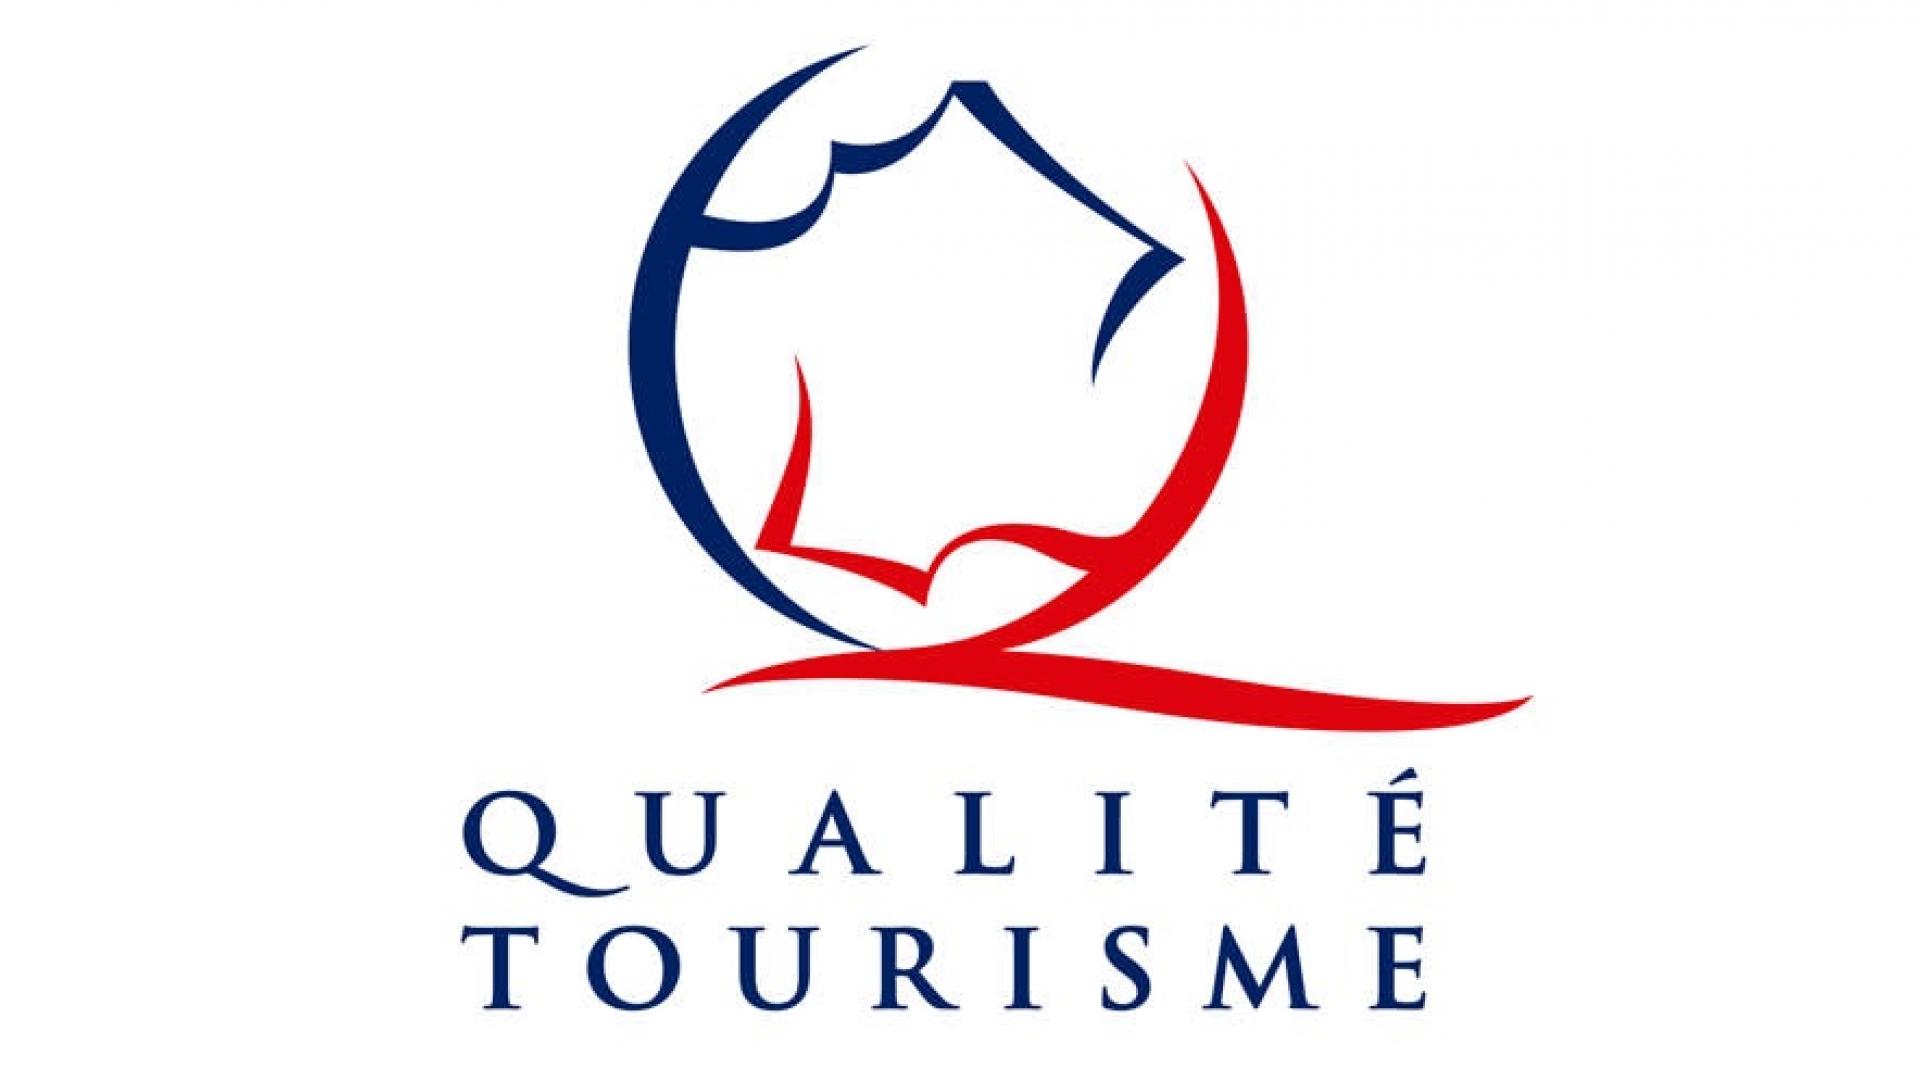 Qualité tourisme - logo.jpg